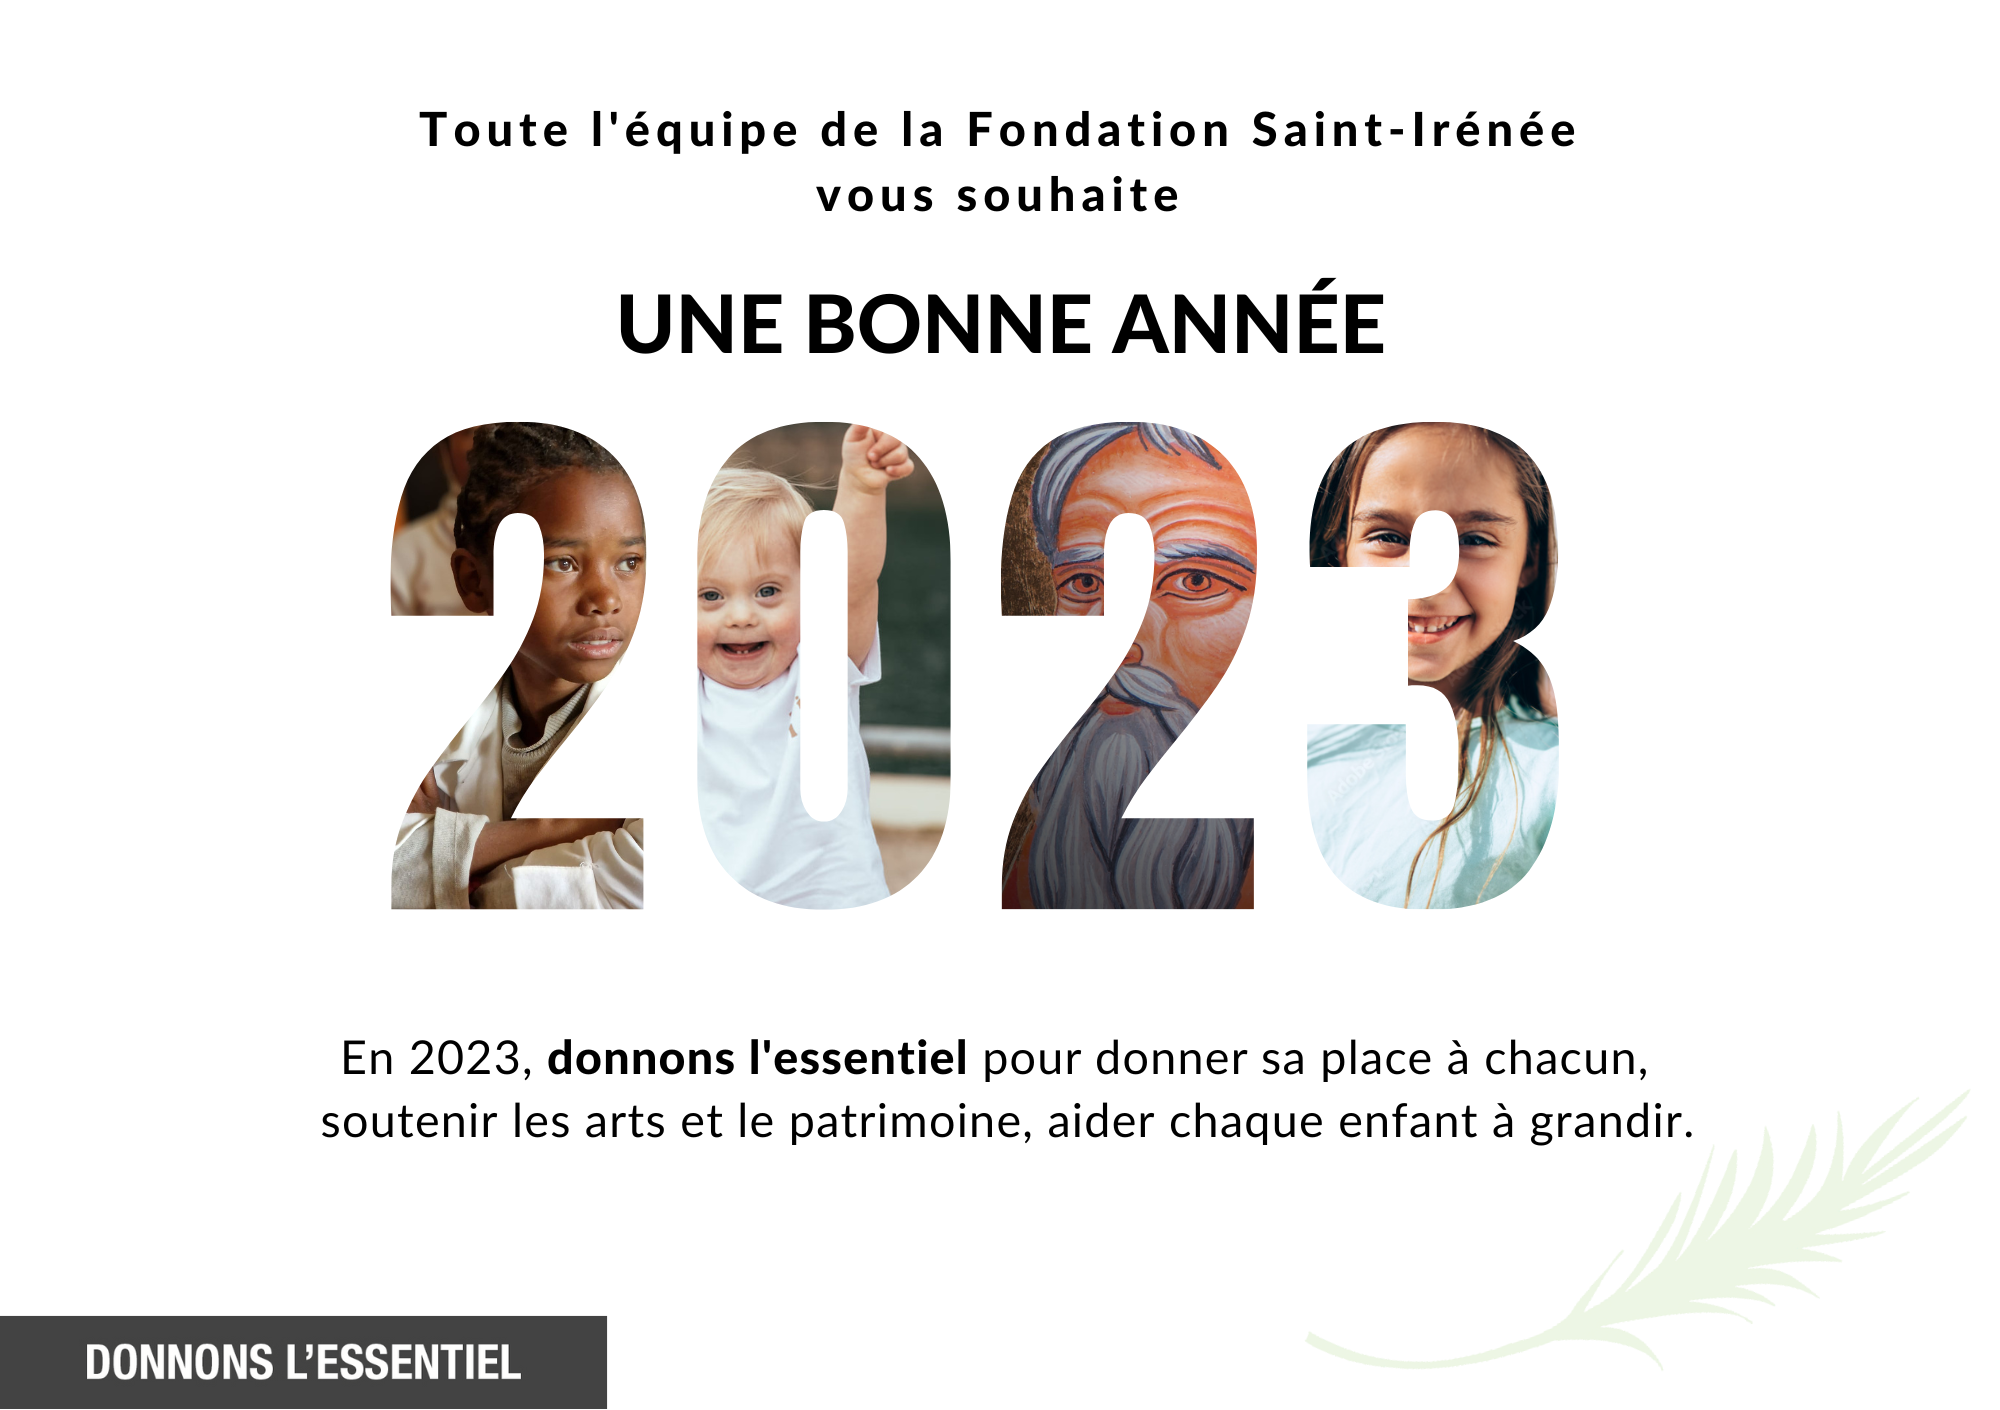 La Fondation vous souhaite une bonne année 2023 !